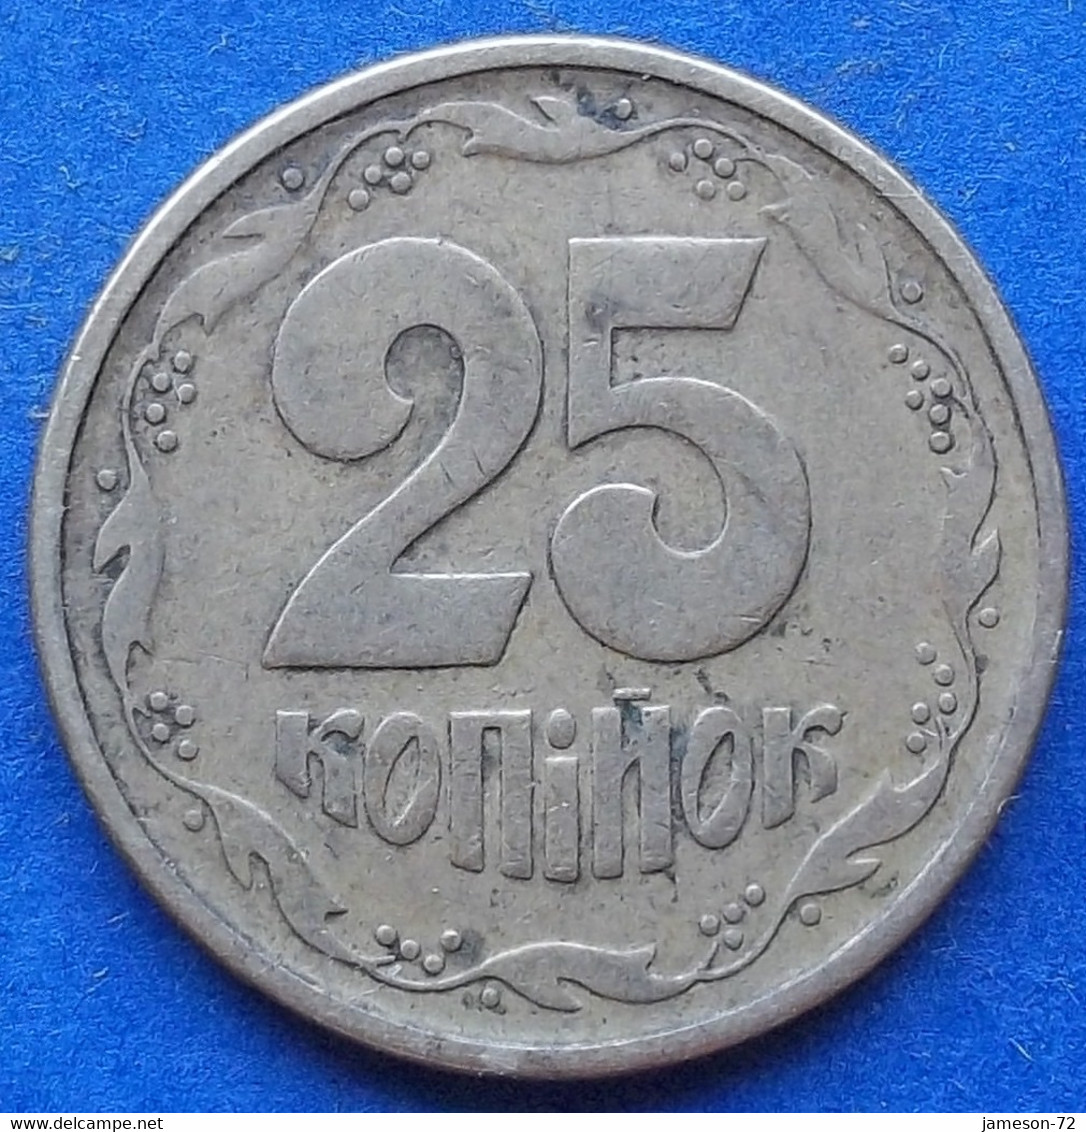 UKRAINE - 25 Kopiyok 1994 KM# 2.1a Reform Coinage (1996) - Edelweiss Coins - Ukraine